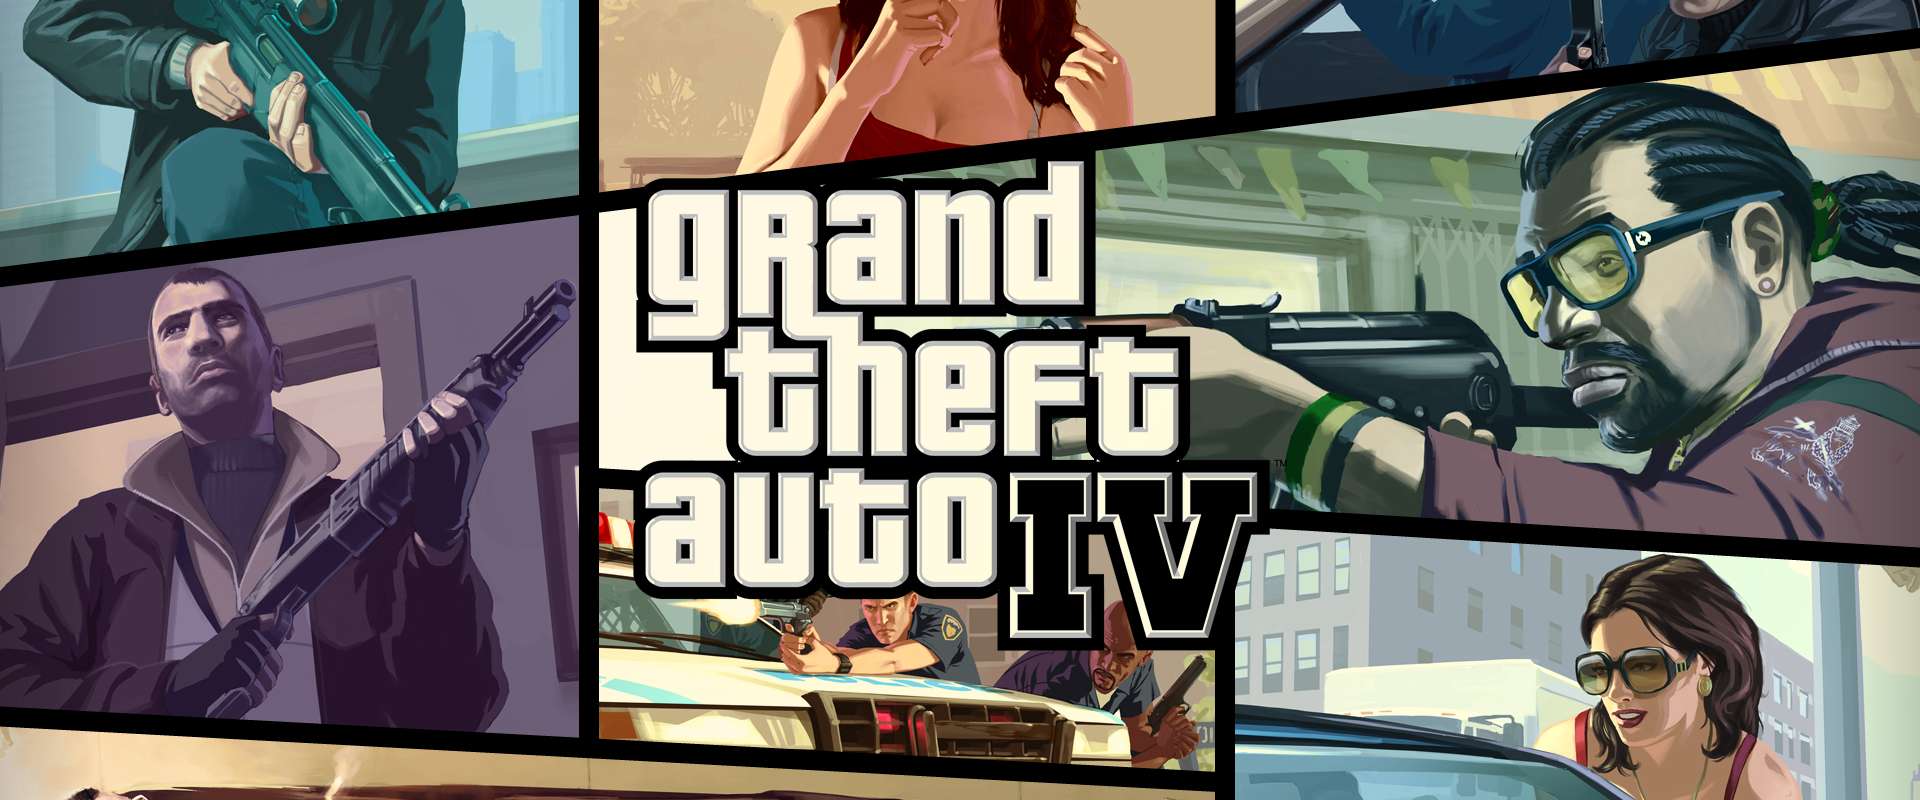 Grand Theft Auto GTA V (PC) Em PT-BR Atualizado + DLCs - Rei Dos Torrents